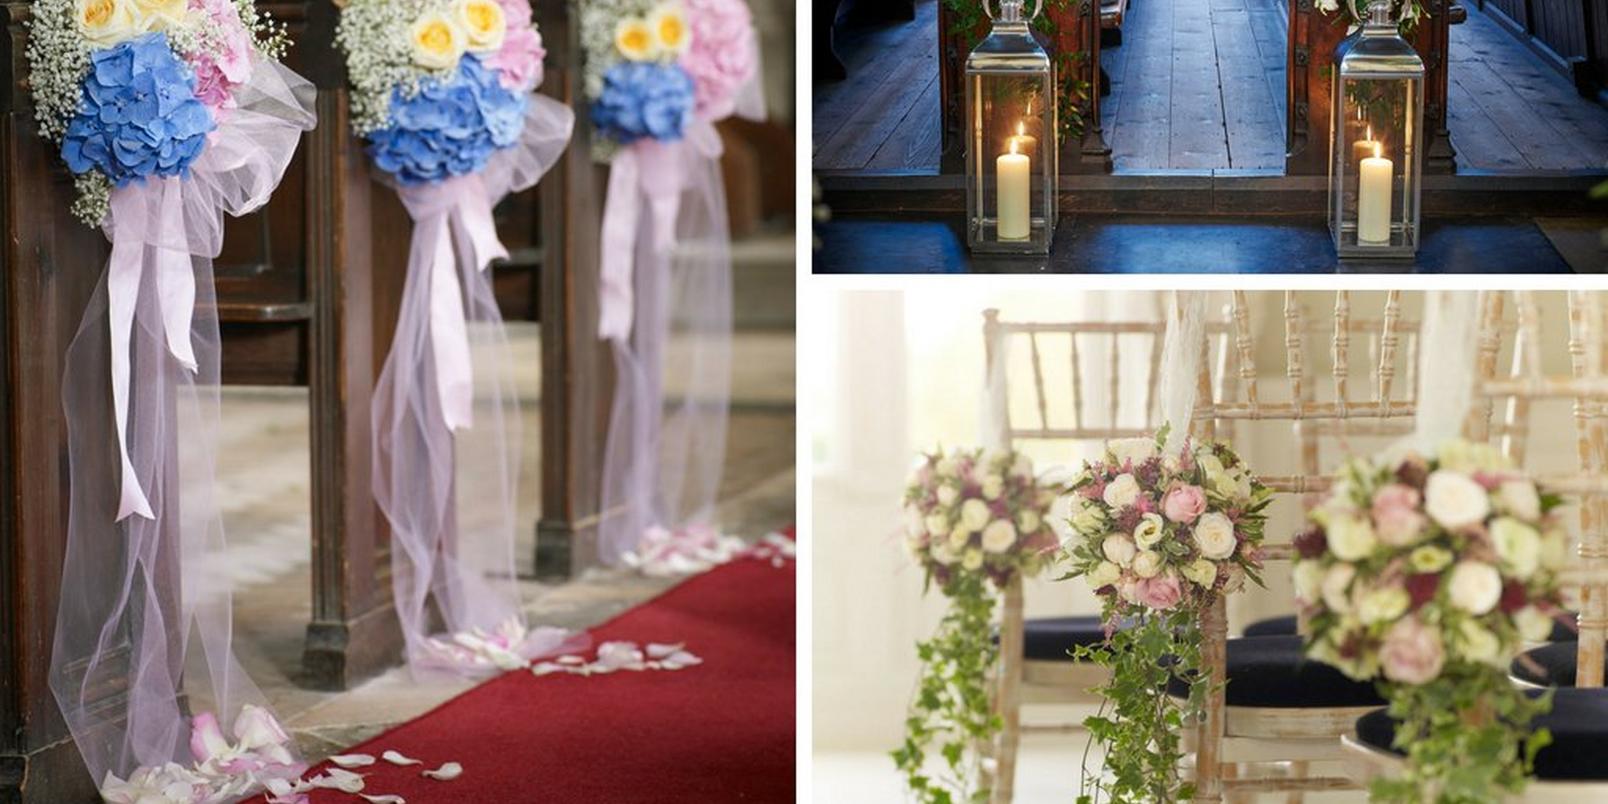 bouquets-on-pews-church-wedding